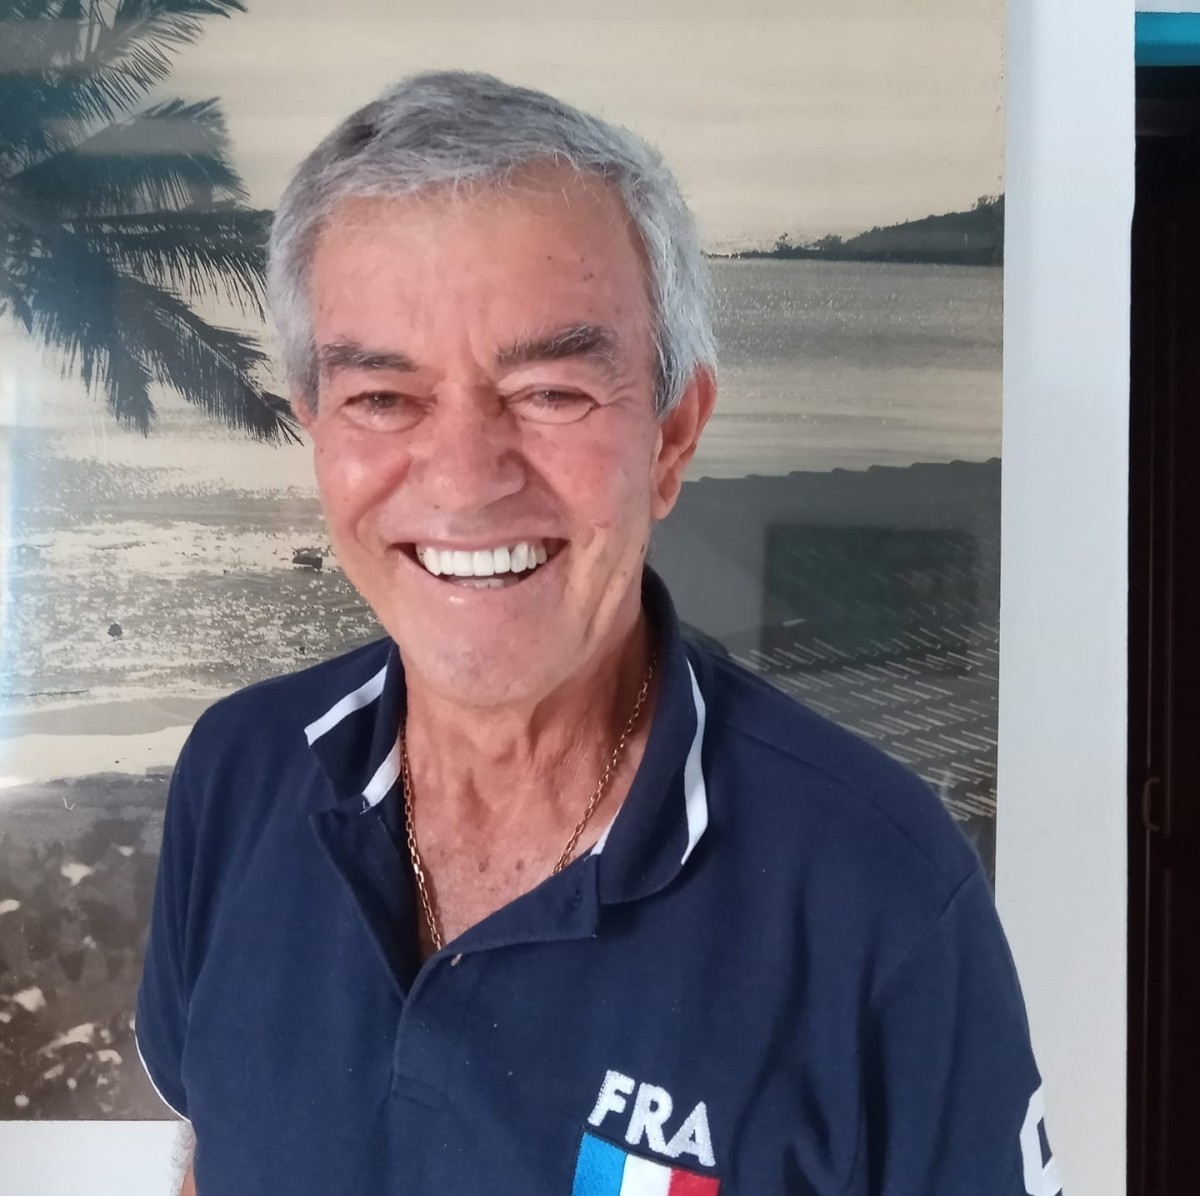 Morre ex-prefeito de Búzios, Toninho Branco, aos 73 anos